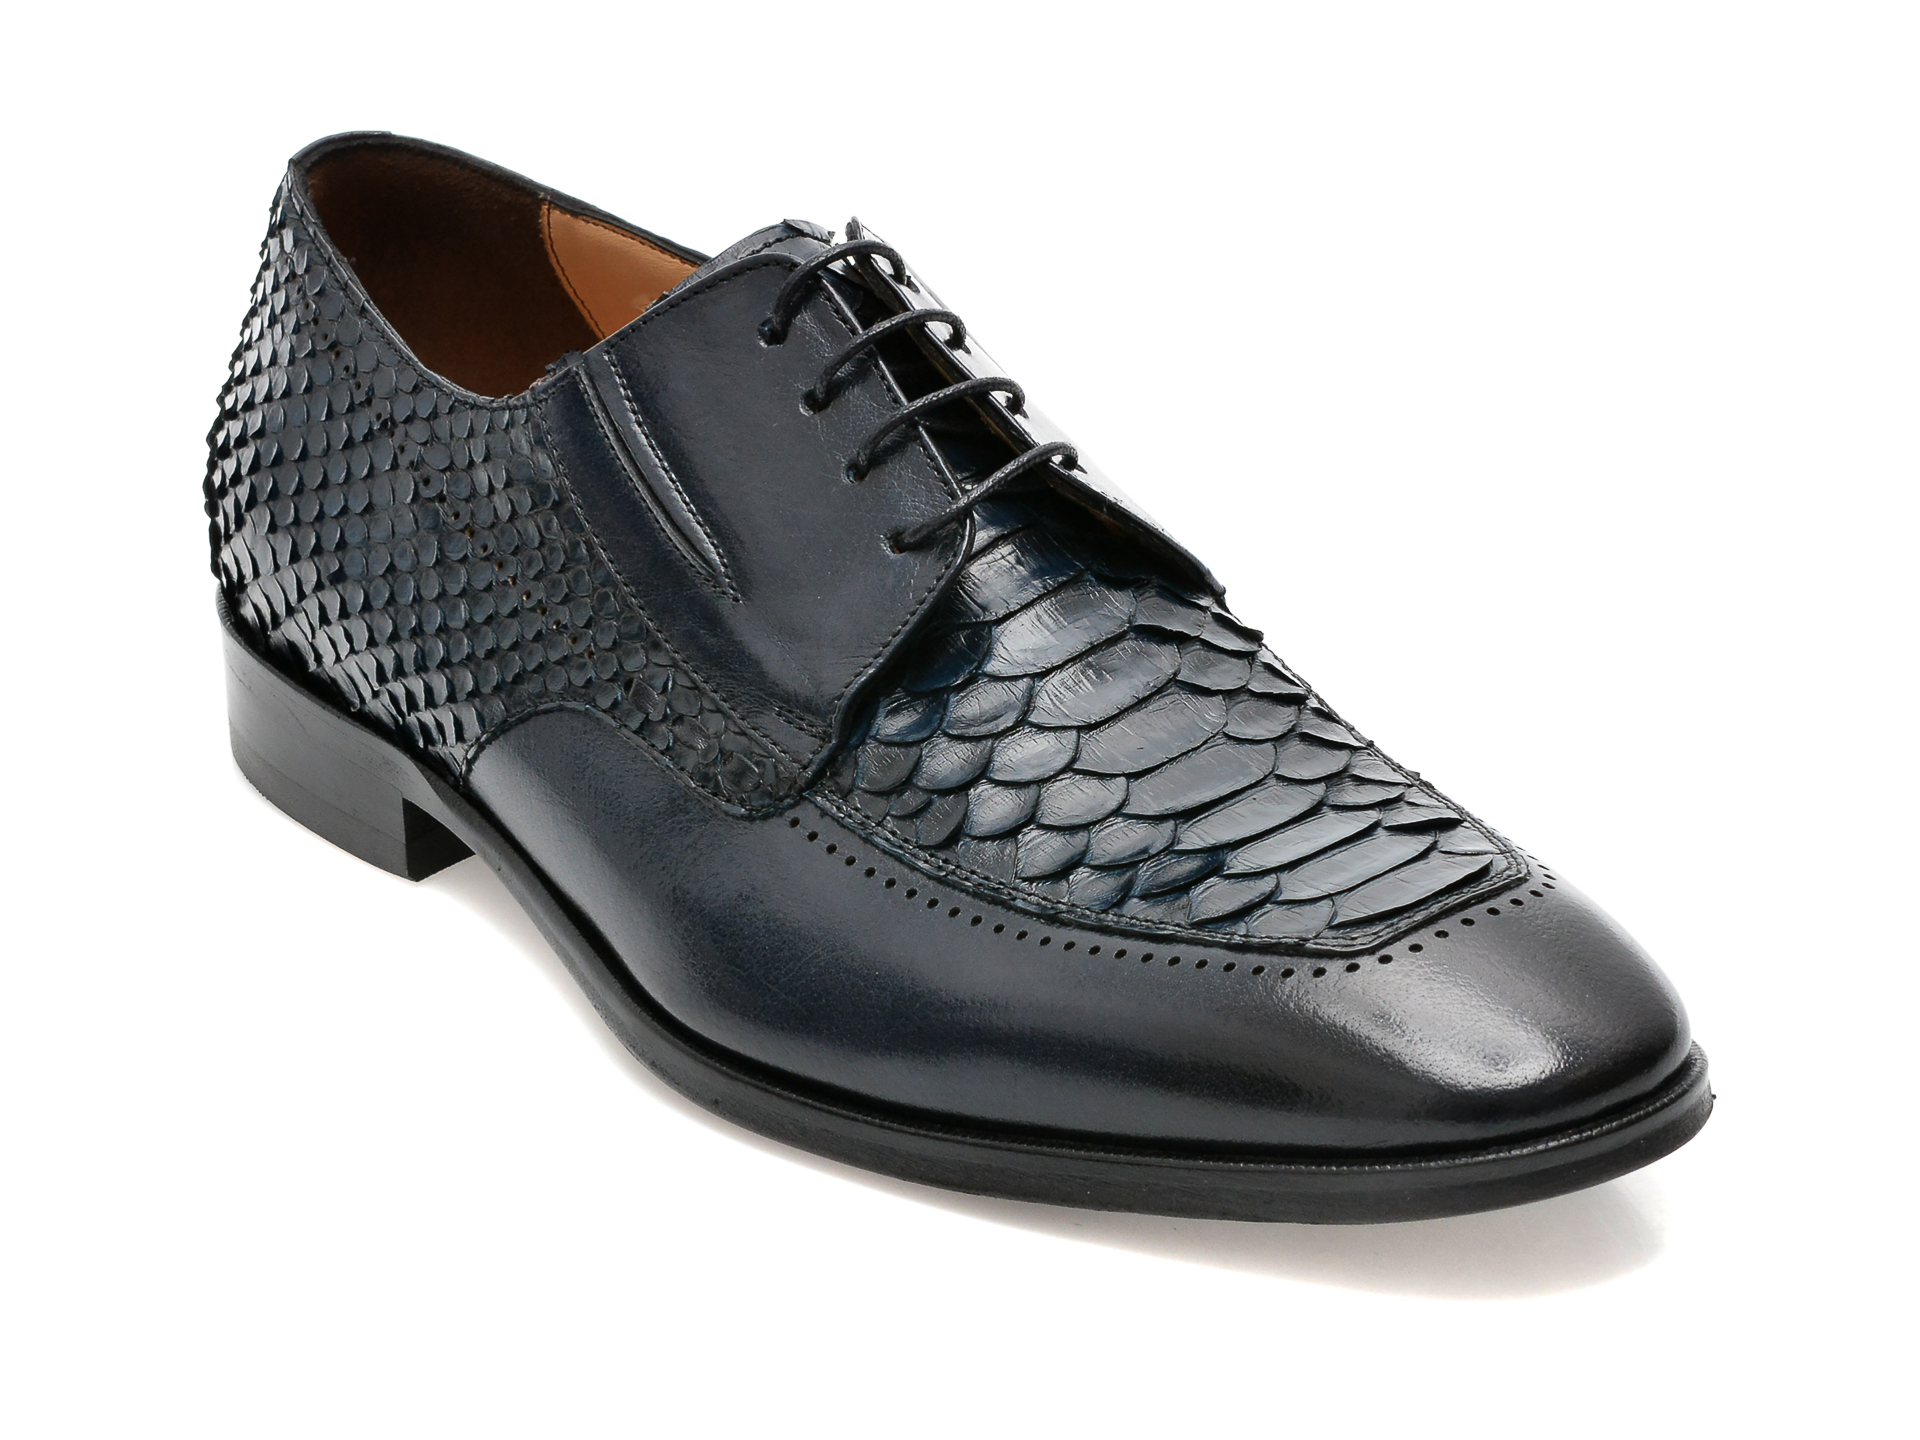 Pantofi EPICA bleumarin, 48701, din piele naturala /barbati/pantofi /barbati/pantofi